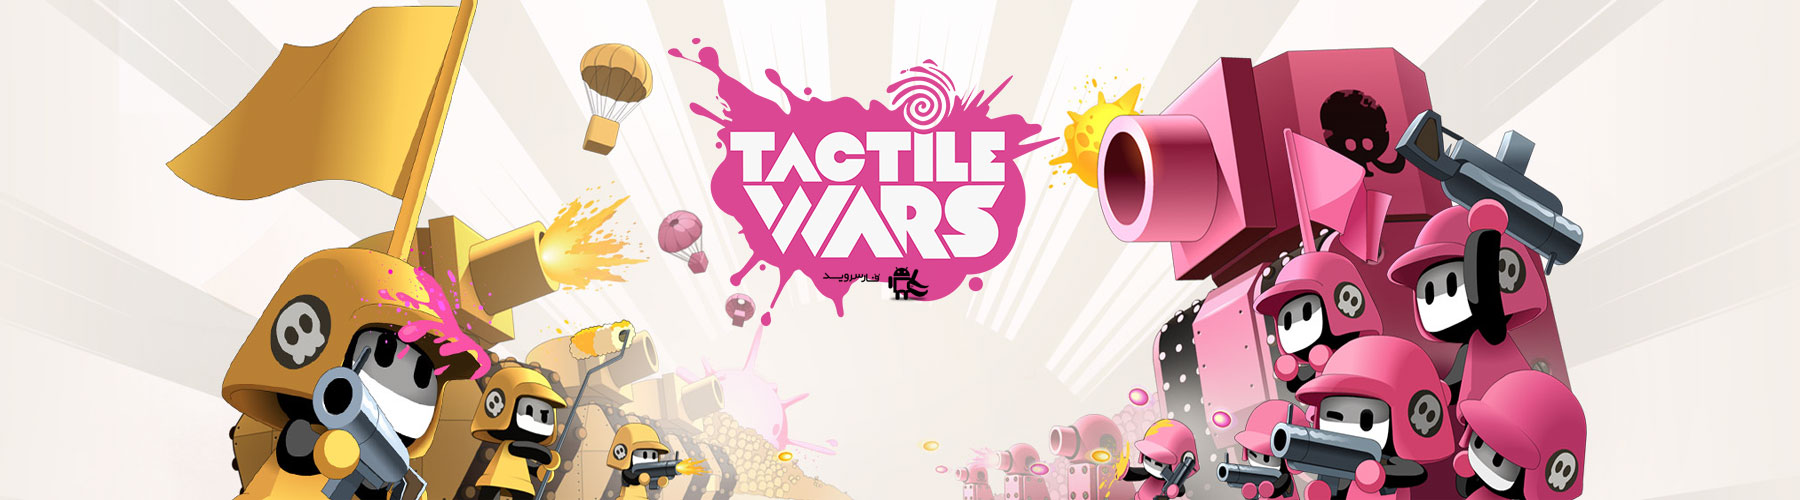 دانلود Tactile Wars - بازی استراتژی جنگ های لمسی اندروید + دیتا